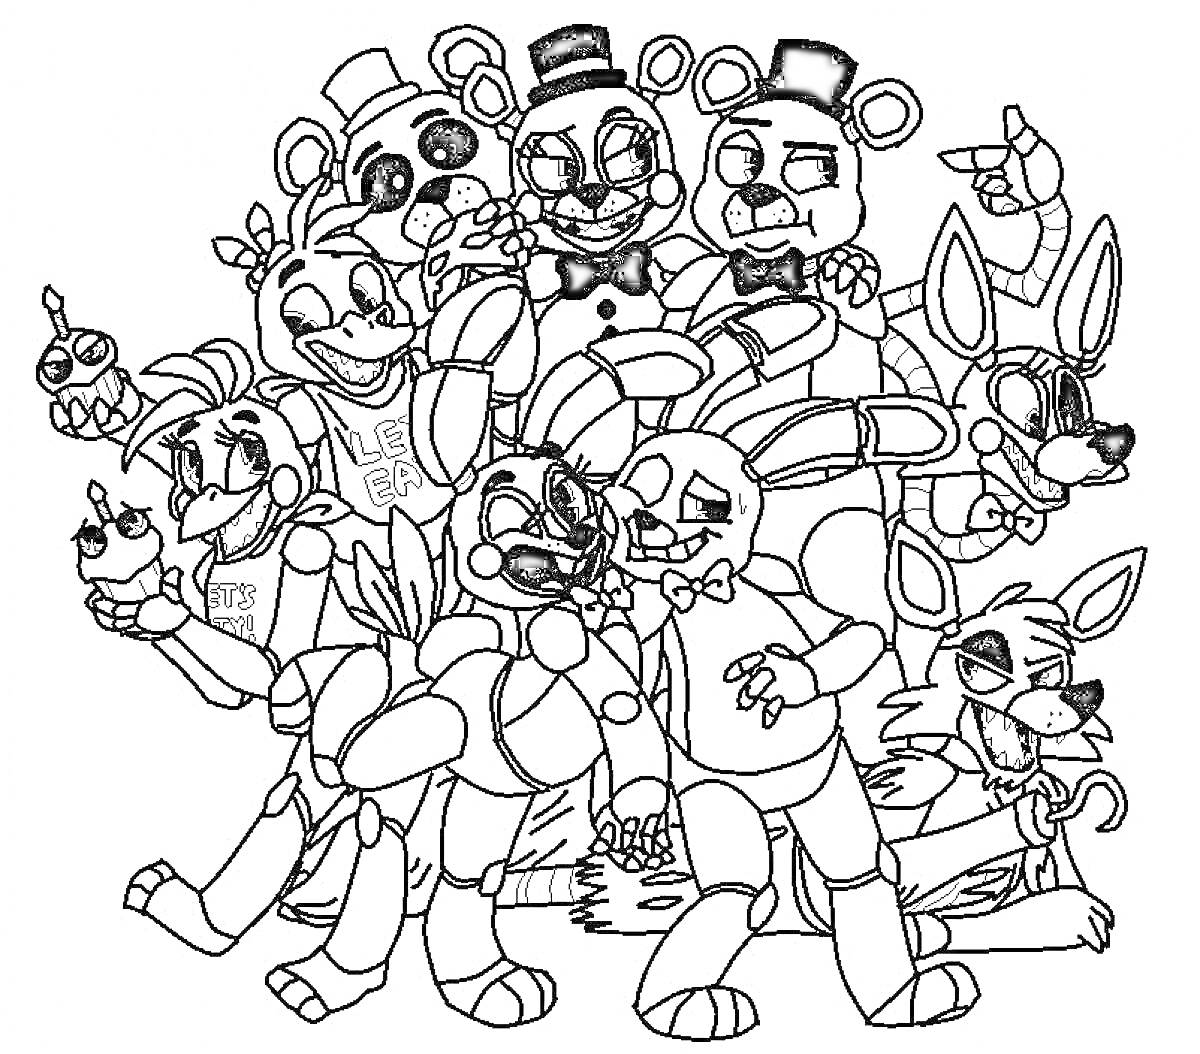 Раскраска Аниматроники из FNAF - различные персонажи в сборе, включая медведя, зайцев, лис и утку, некоторые в шляпах и галстуках-бабочках